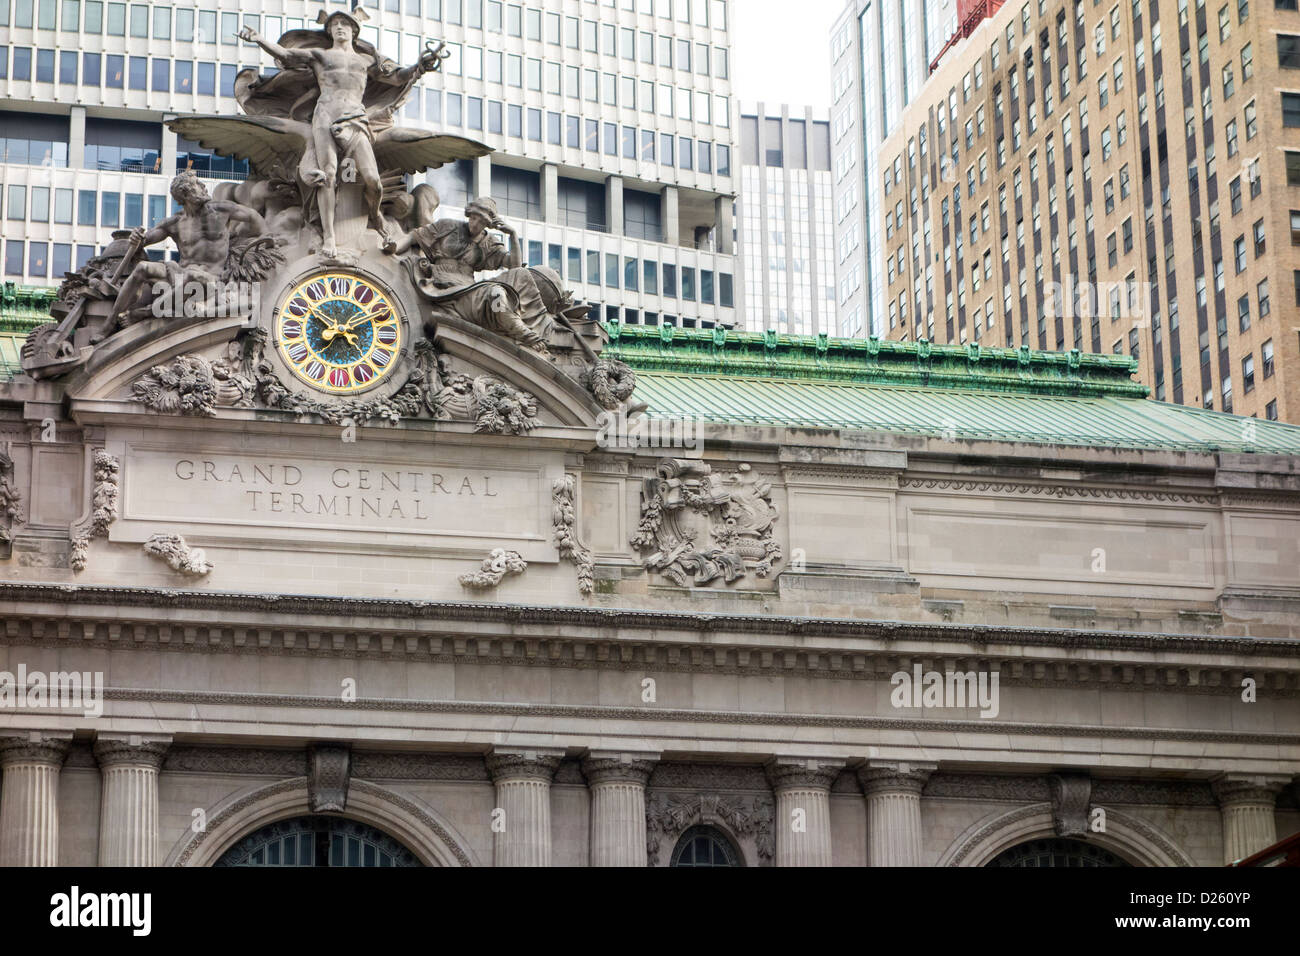 Dettaglio della Grand Central Station di New York City STATI UNITI D'AMERICA Foto Stock